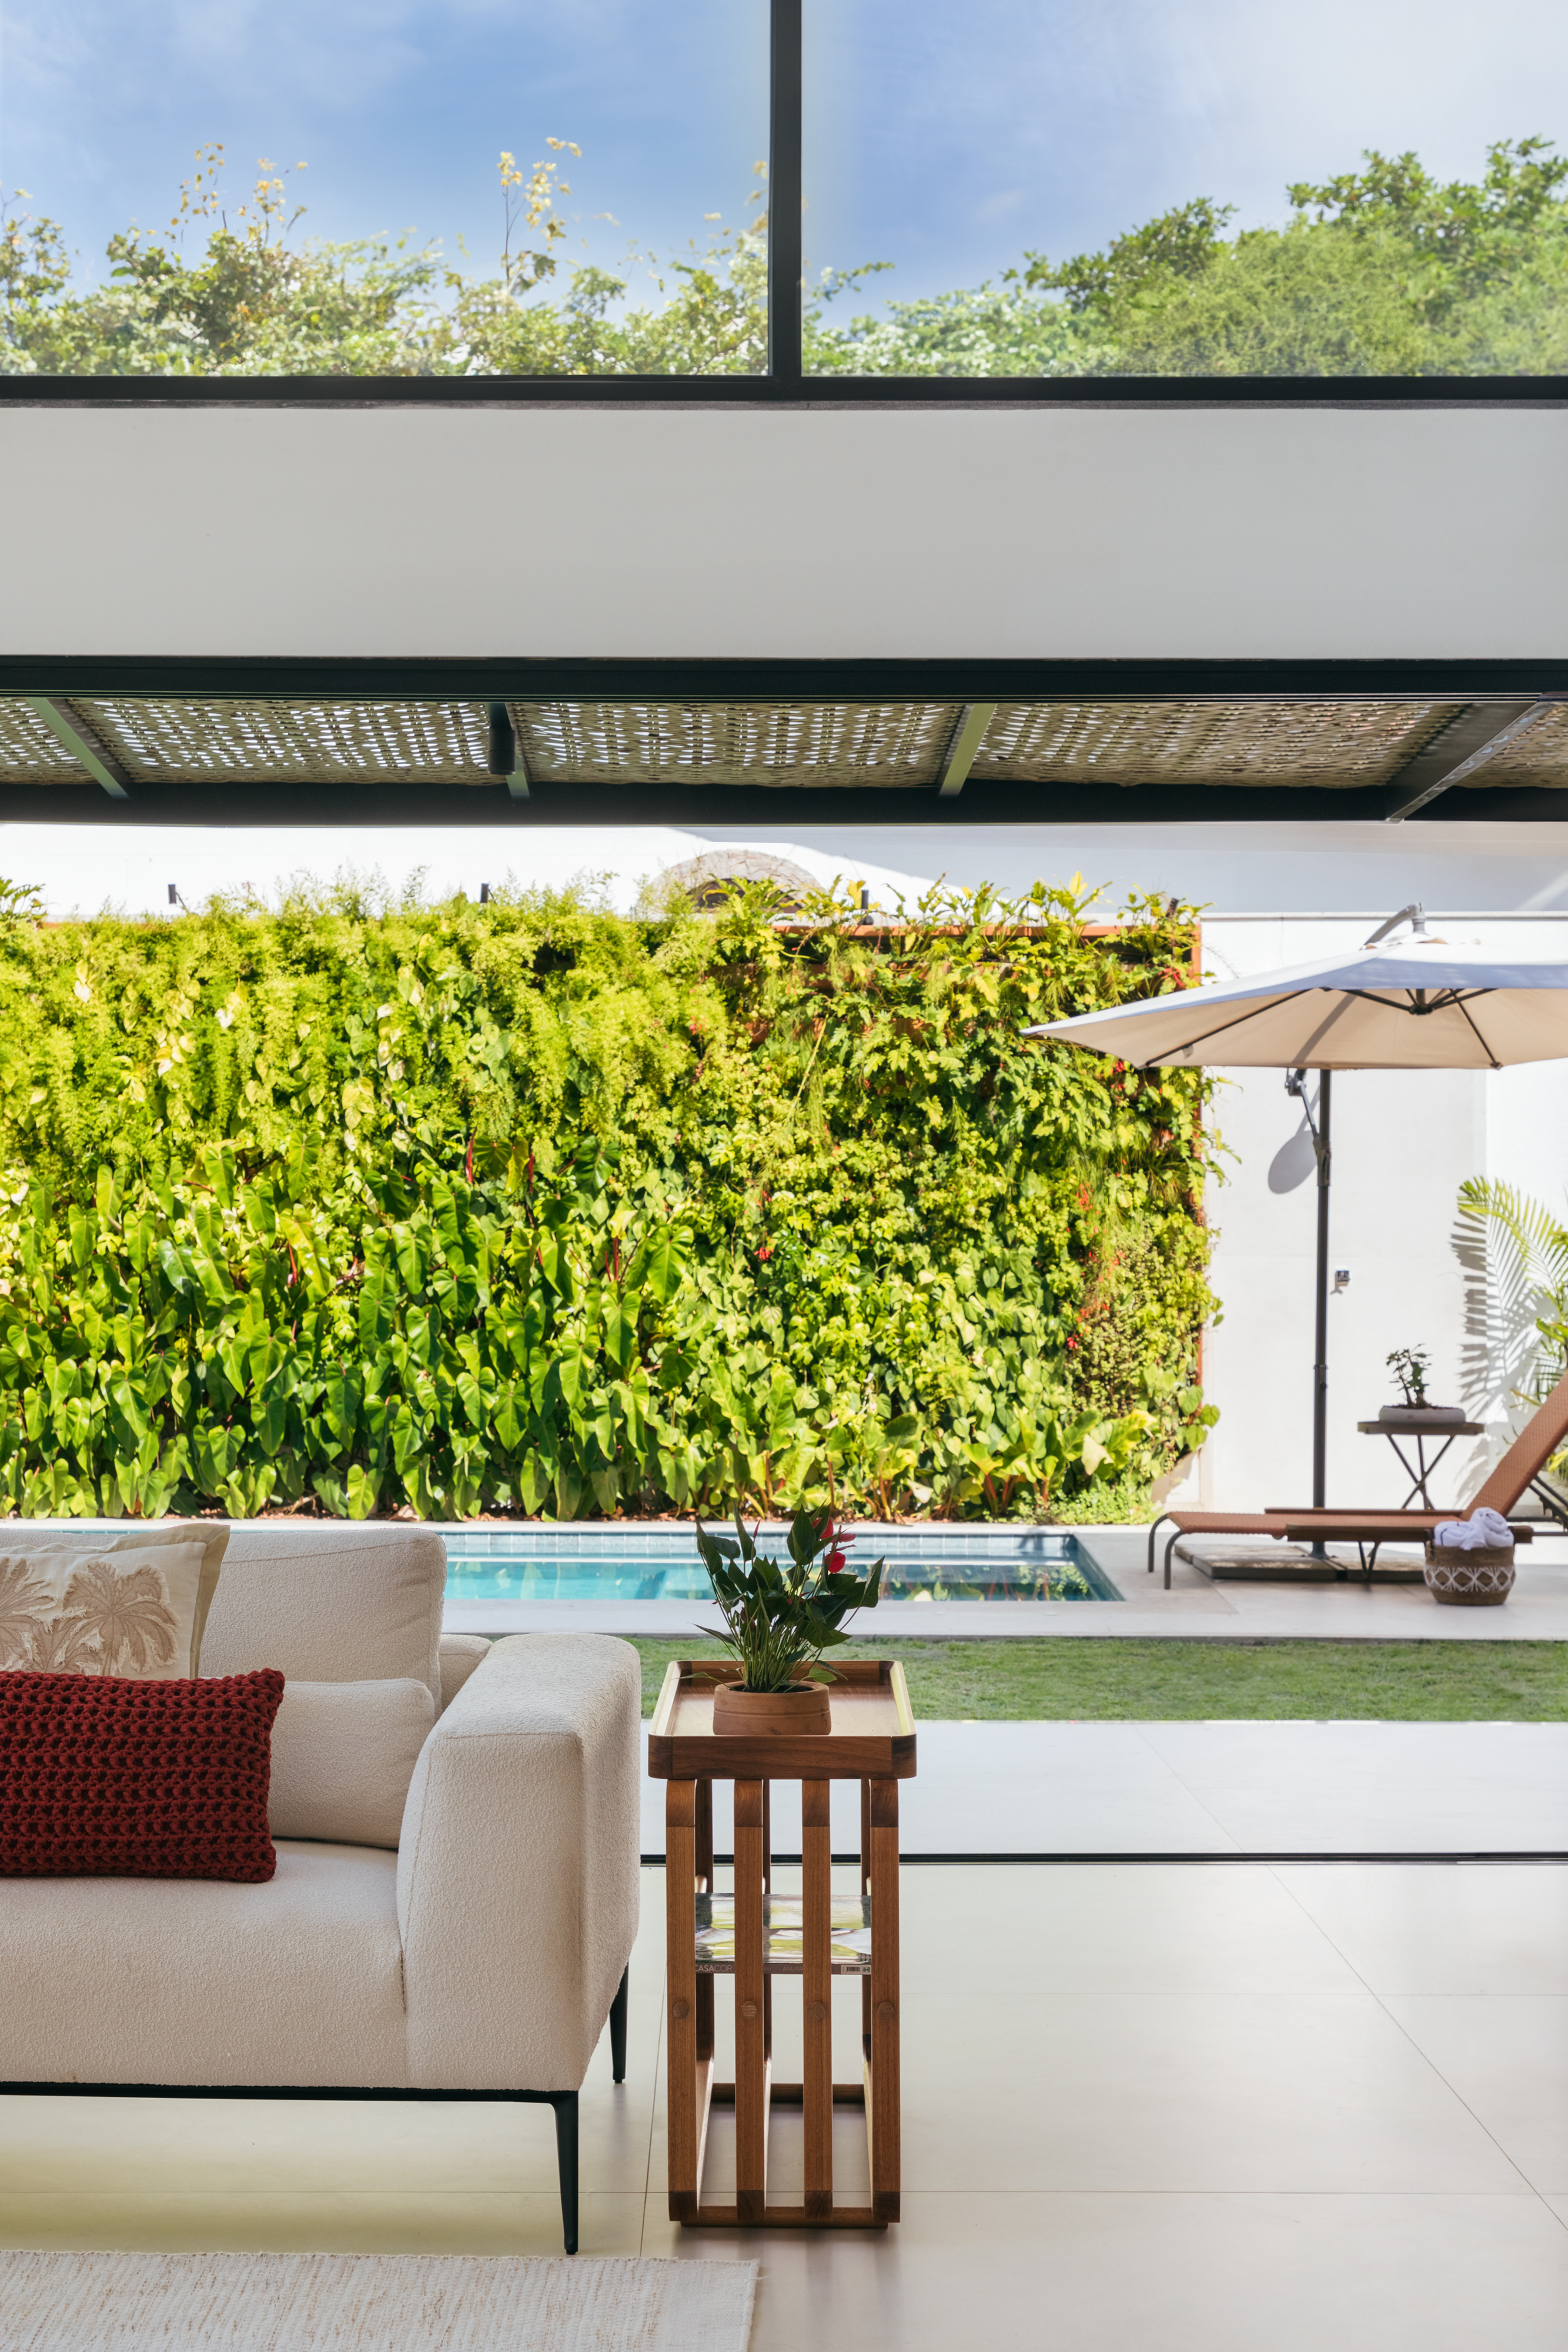 Pergolados com forro em fibras de bambu trançadas envolvem casa de 195 m². Projeto de Amanda Miranda. Na foto, área externa, jardim vertical, piscina.